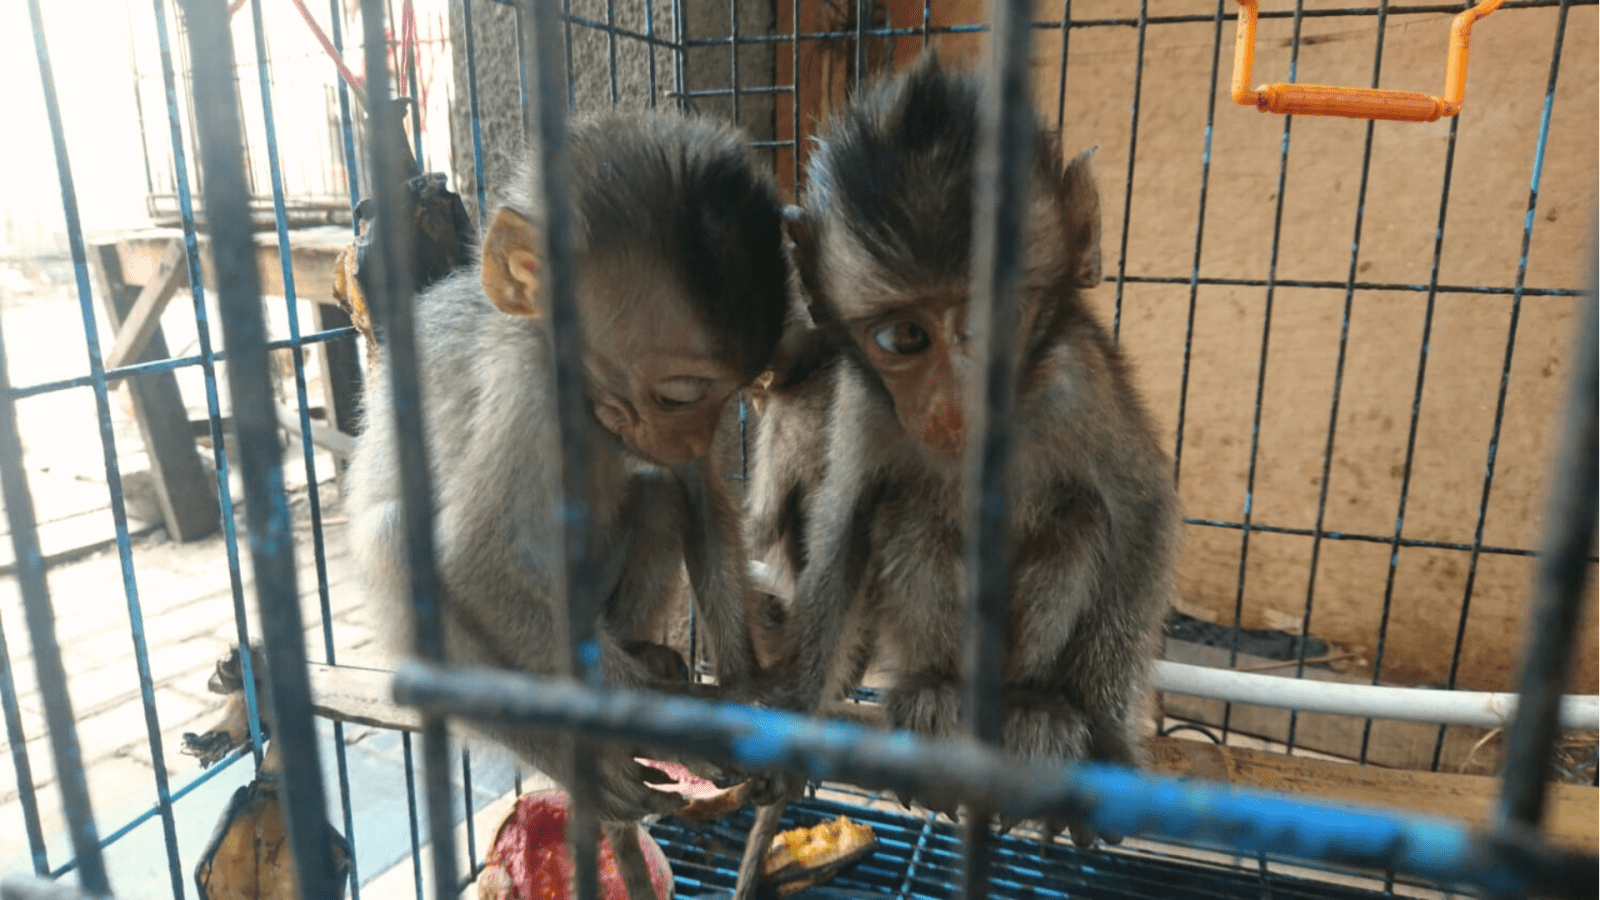 Bayi monyet ekor panjang masih sering dijumpai di pasar hewan untuk diperdagangkan. | Foto: Garda Animalia